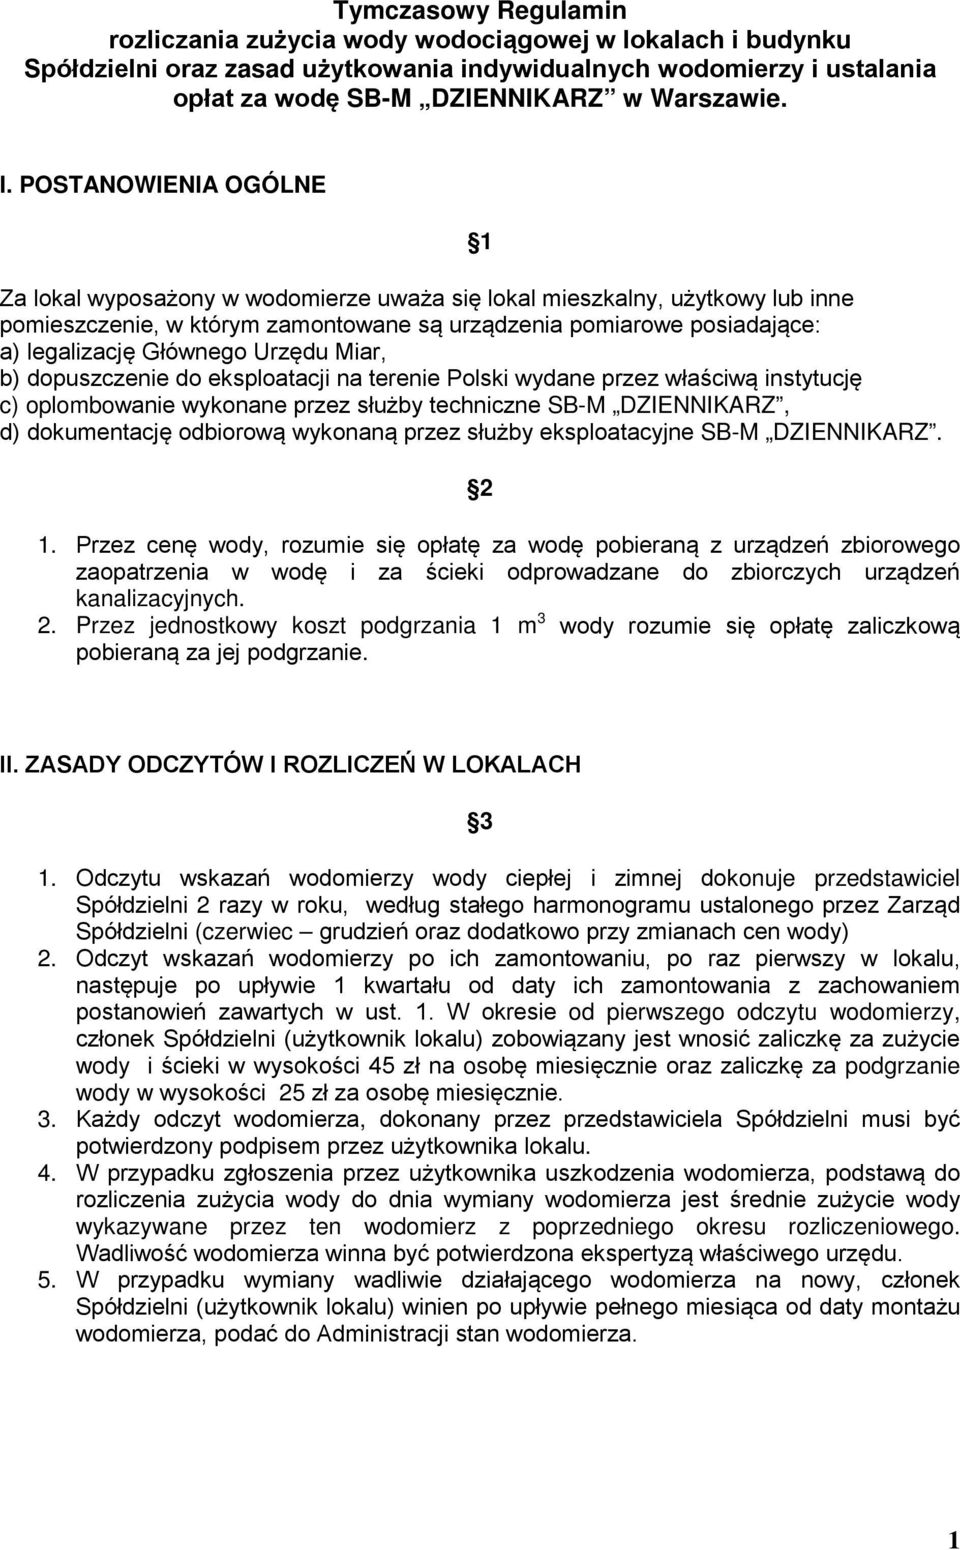 Urzędu Miar, b) dopuszczenie do eksploatacji na terenie Polski wydane przez właściwą instytucję c) oplombowanie wykonane przez służby techniczne SB-M DZIENNIKARZ, d) dokumentację odbiorową wykonaną